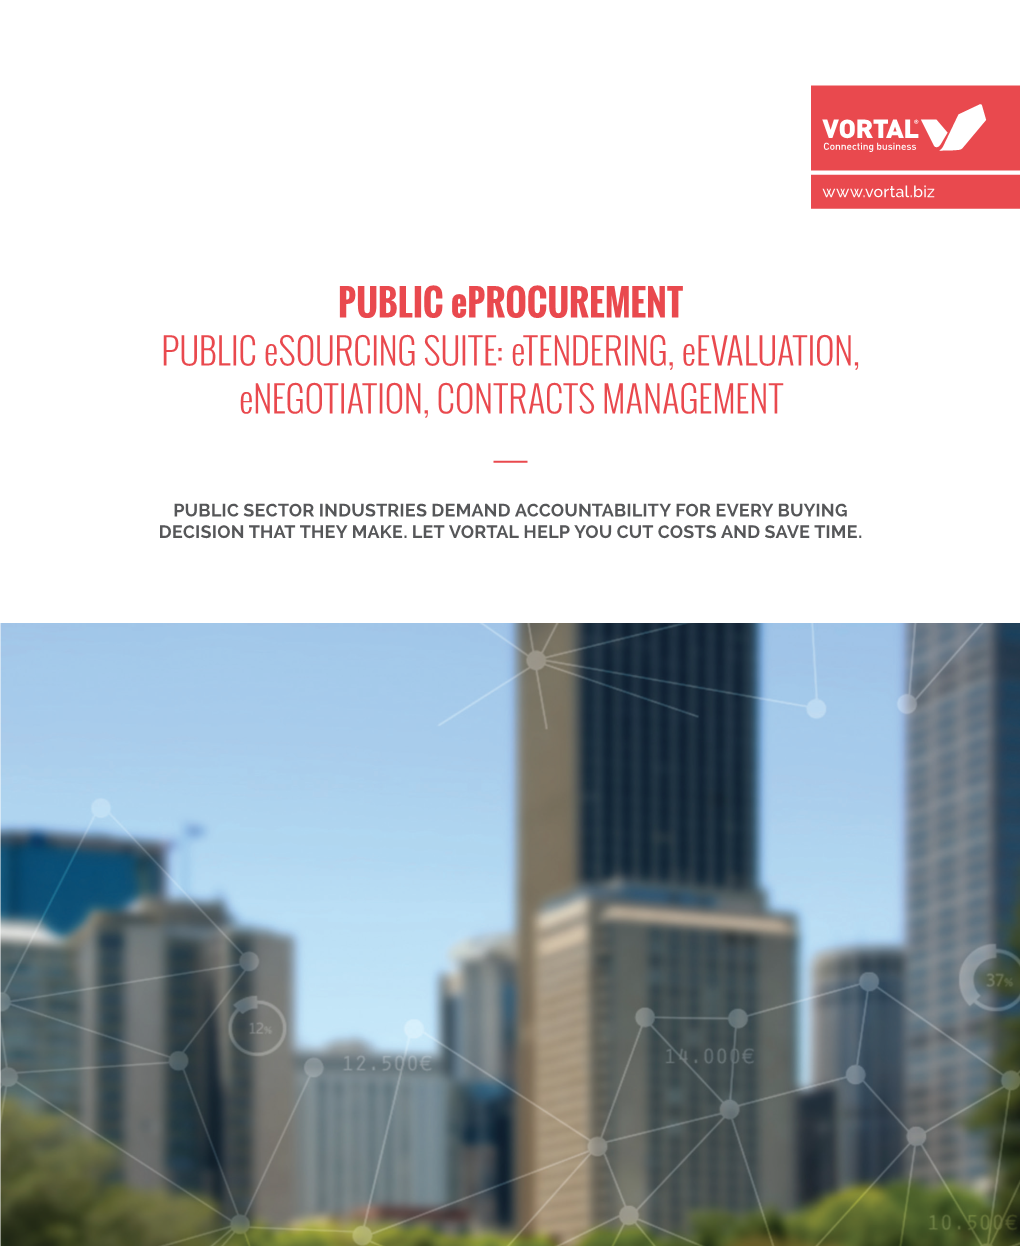 PUBLIC Eprocurement PUBLIC Esourcing SUITE: Etendering, Eevaluation, Enegotiation, CONTRACTS MANAGEMENT